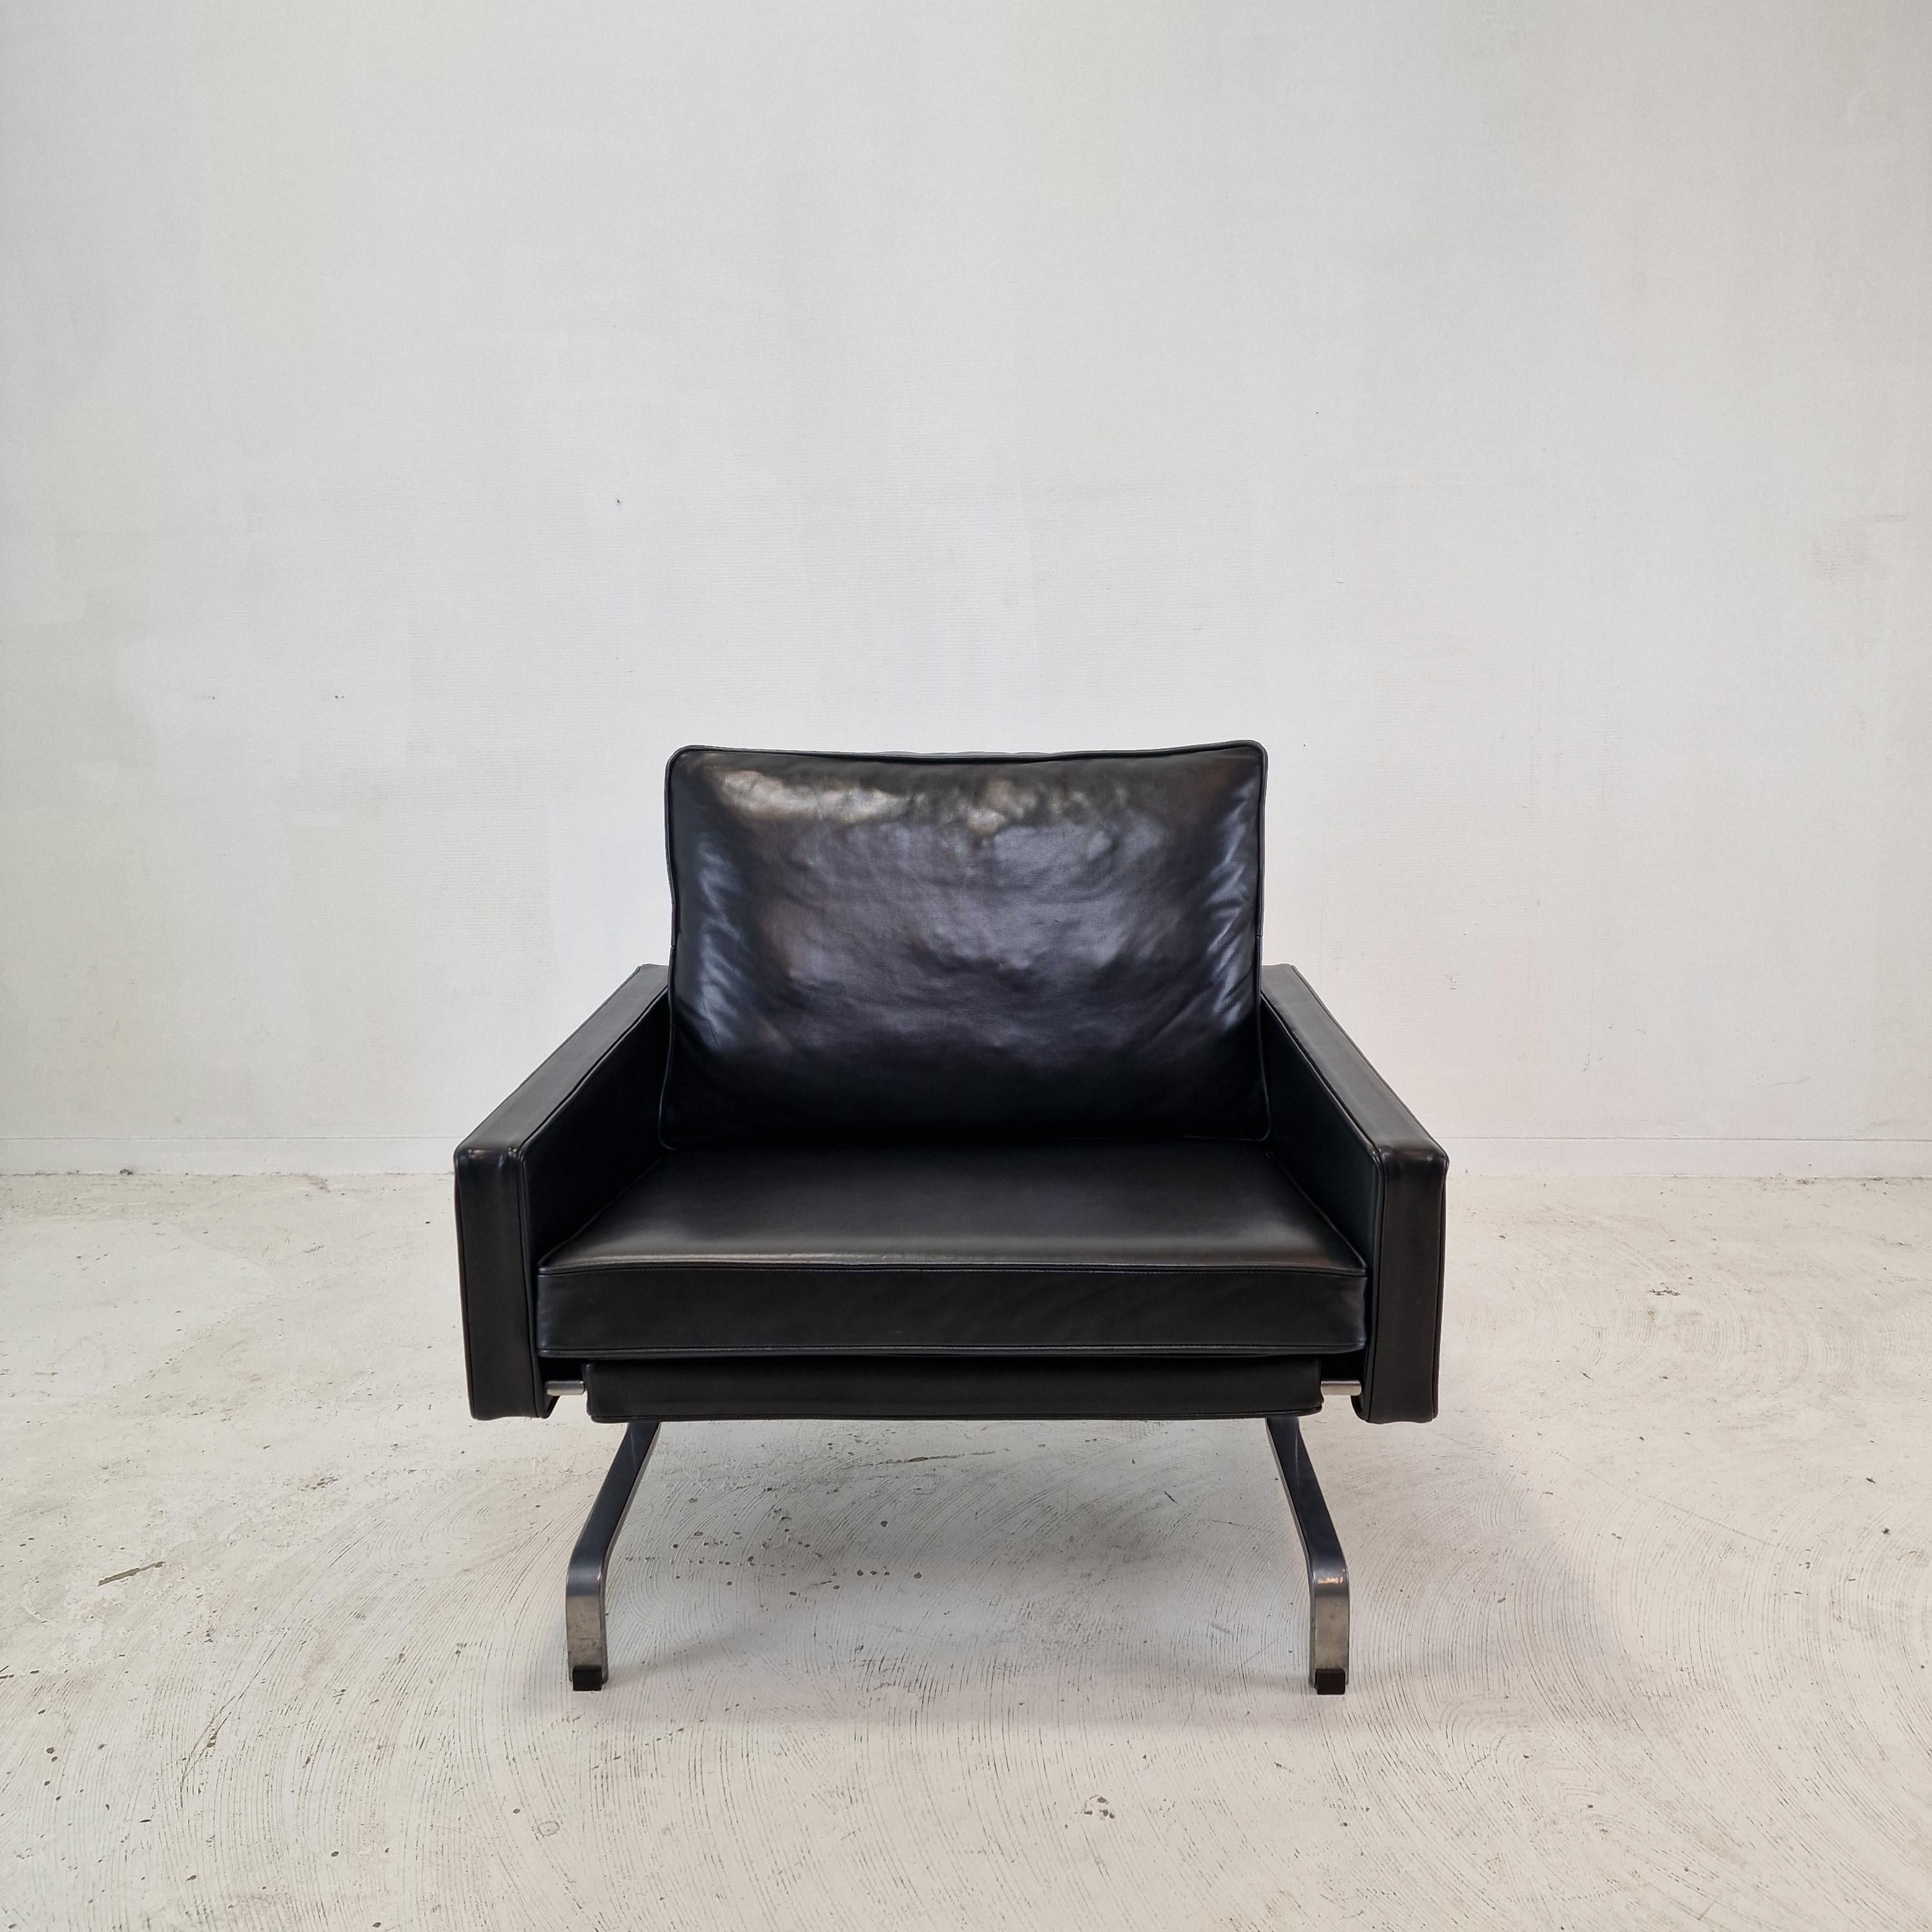 Très beau fauteuil PK31.
Cette superbe chaise a été conçue par Poul Kjærholm pour E. Kold Christensen, au Danemark, dans les années 1950.

Magnifique cuir noir souple de haute qualité avec une belle patine. 
Le cuir a été renouvelé il y a quelques